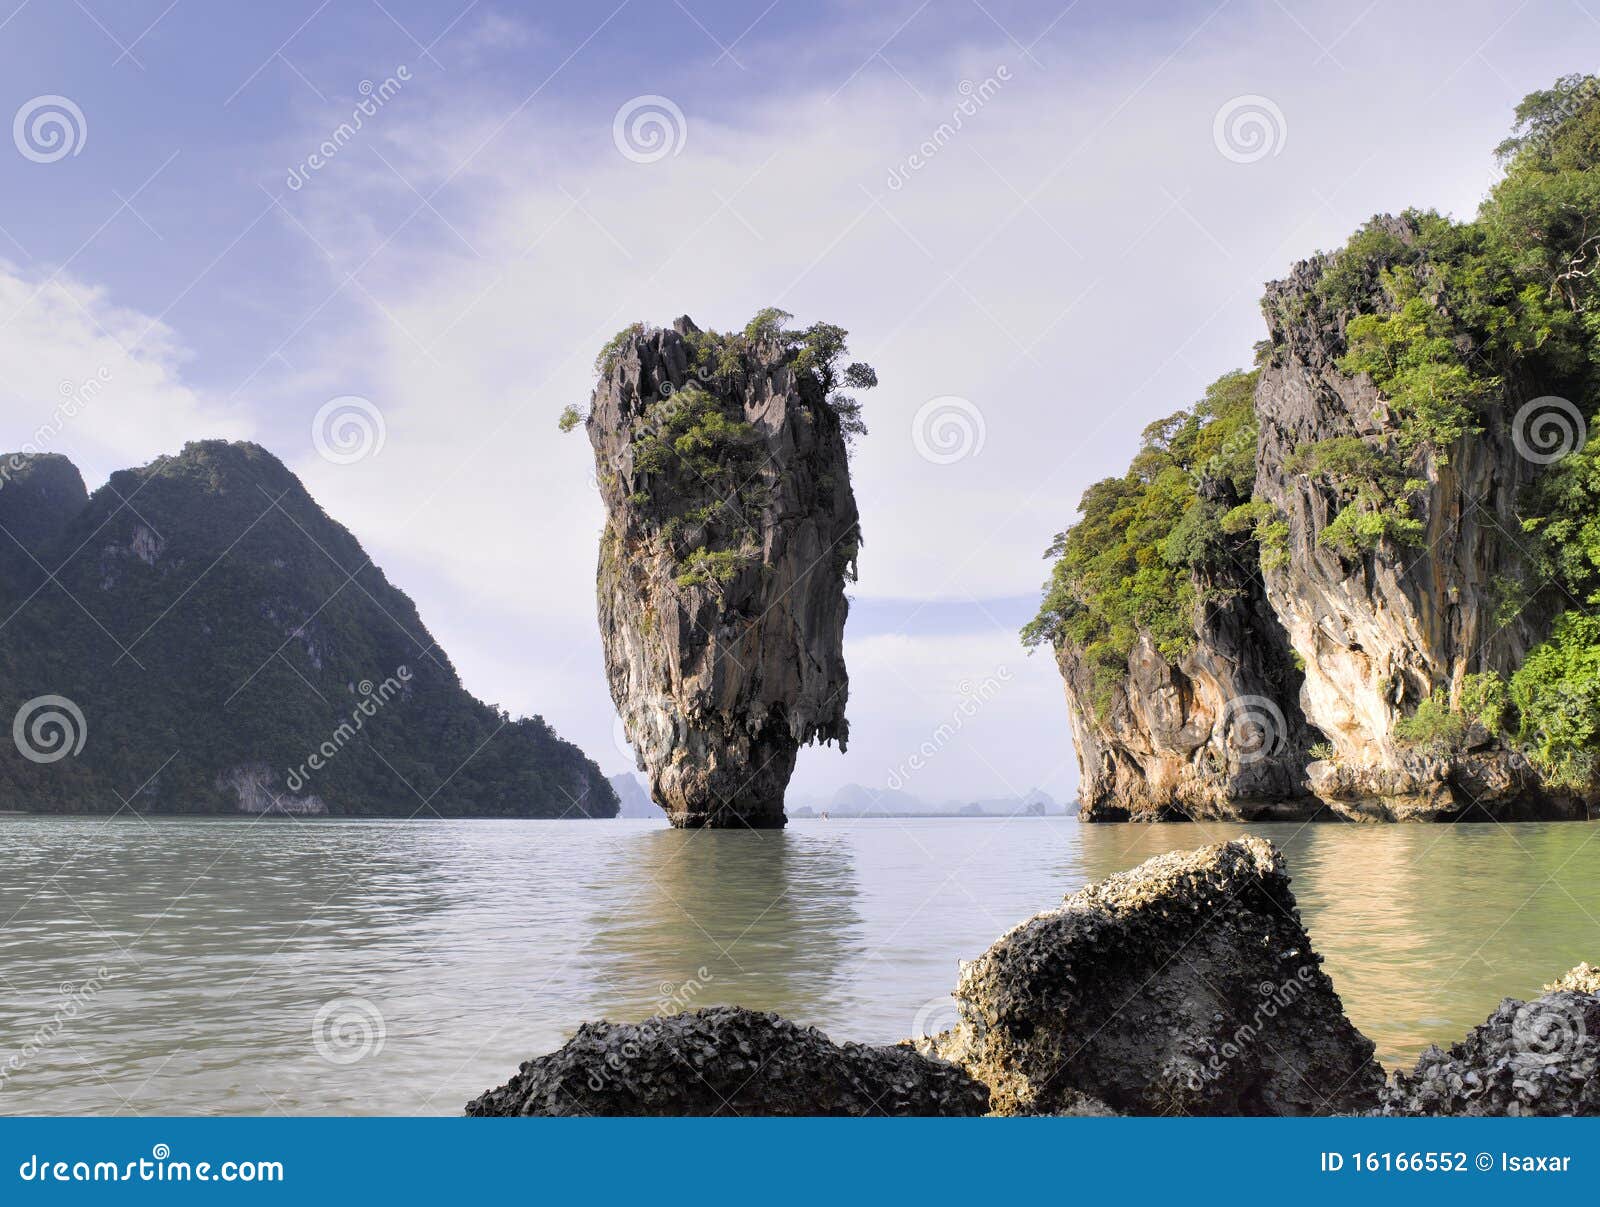 Phang Nga - James Bond Island Stock Photo - Image of nature, phuket ...